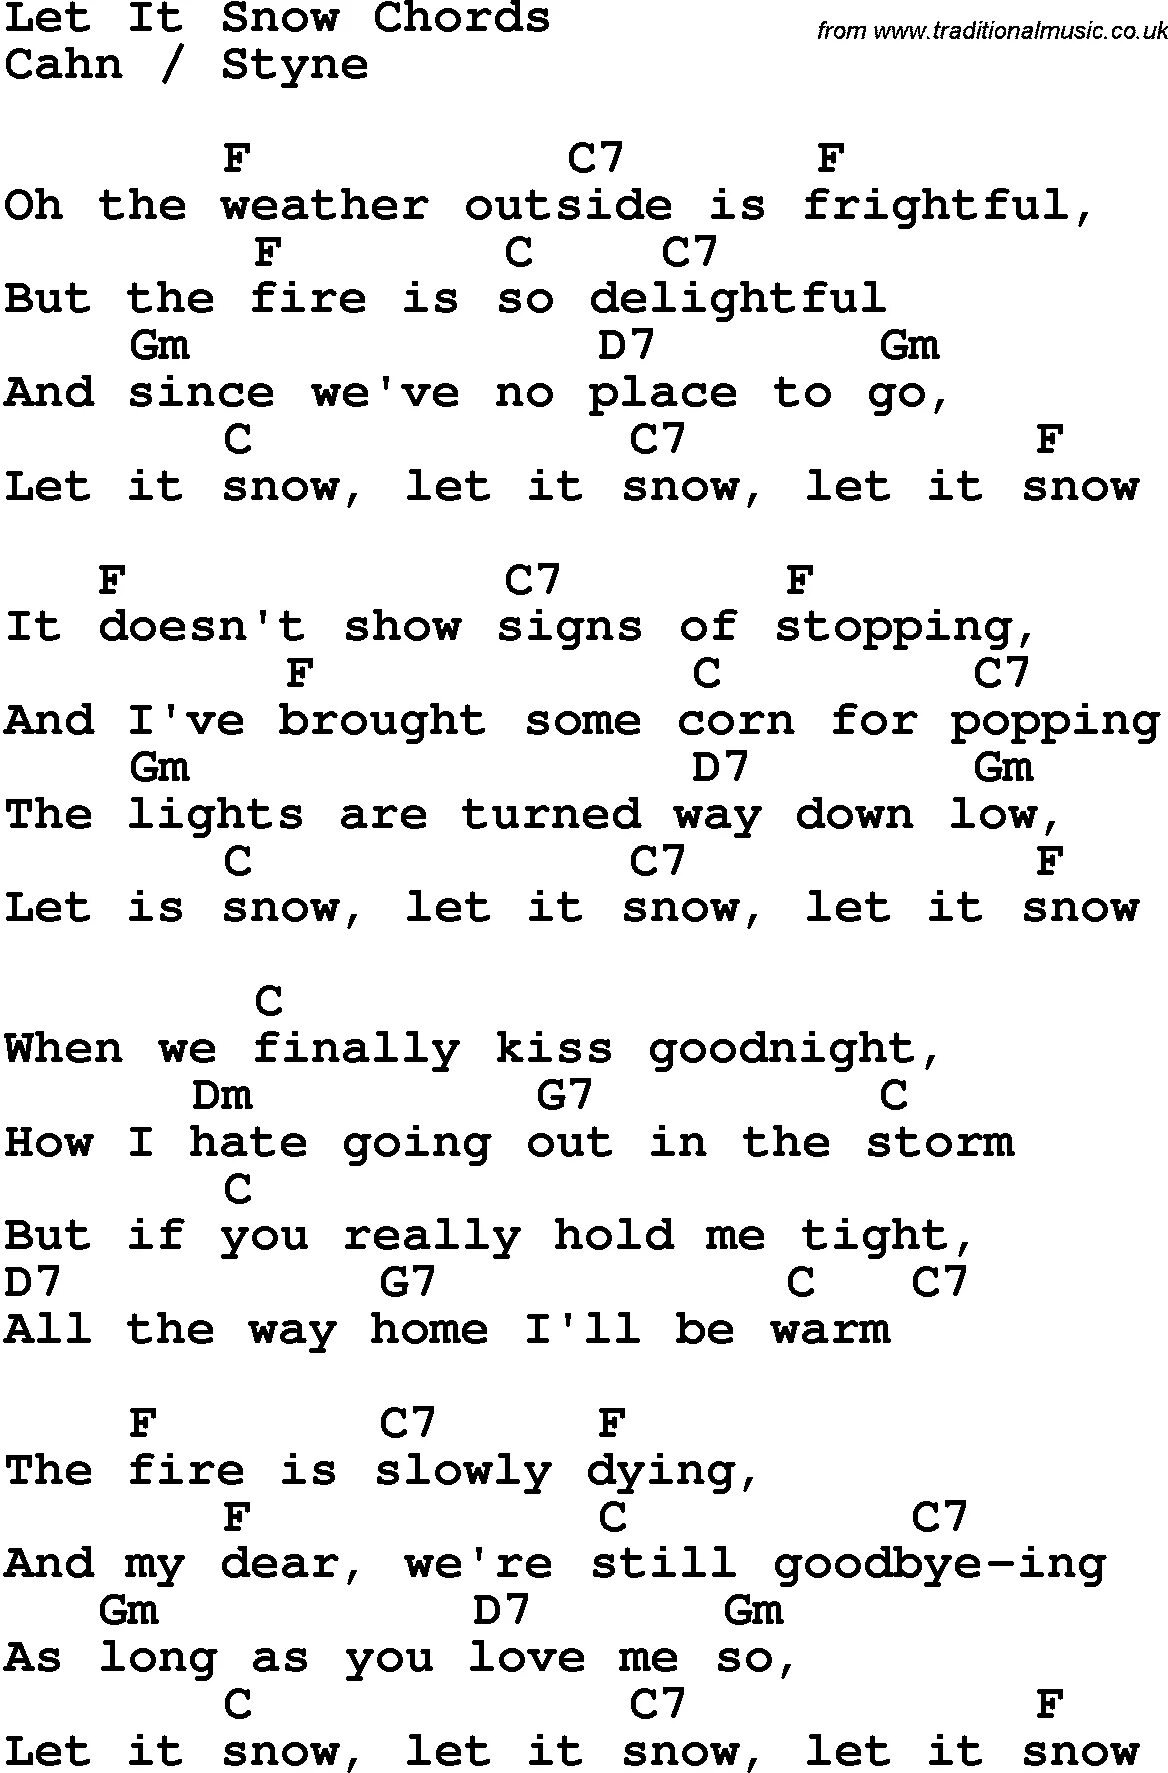 Let it Snow текст. Лет ИТ Сноу слова. Текст песни Let is Snow. Let it Snow Let it Snow Let it Snow текст. Лет ит ми